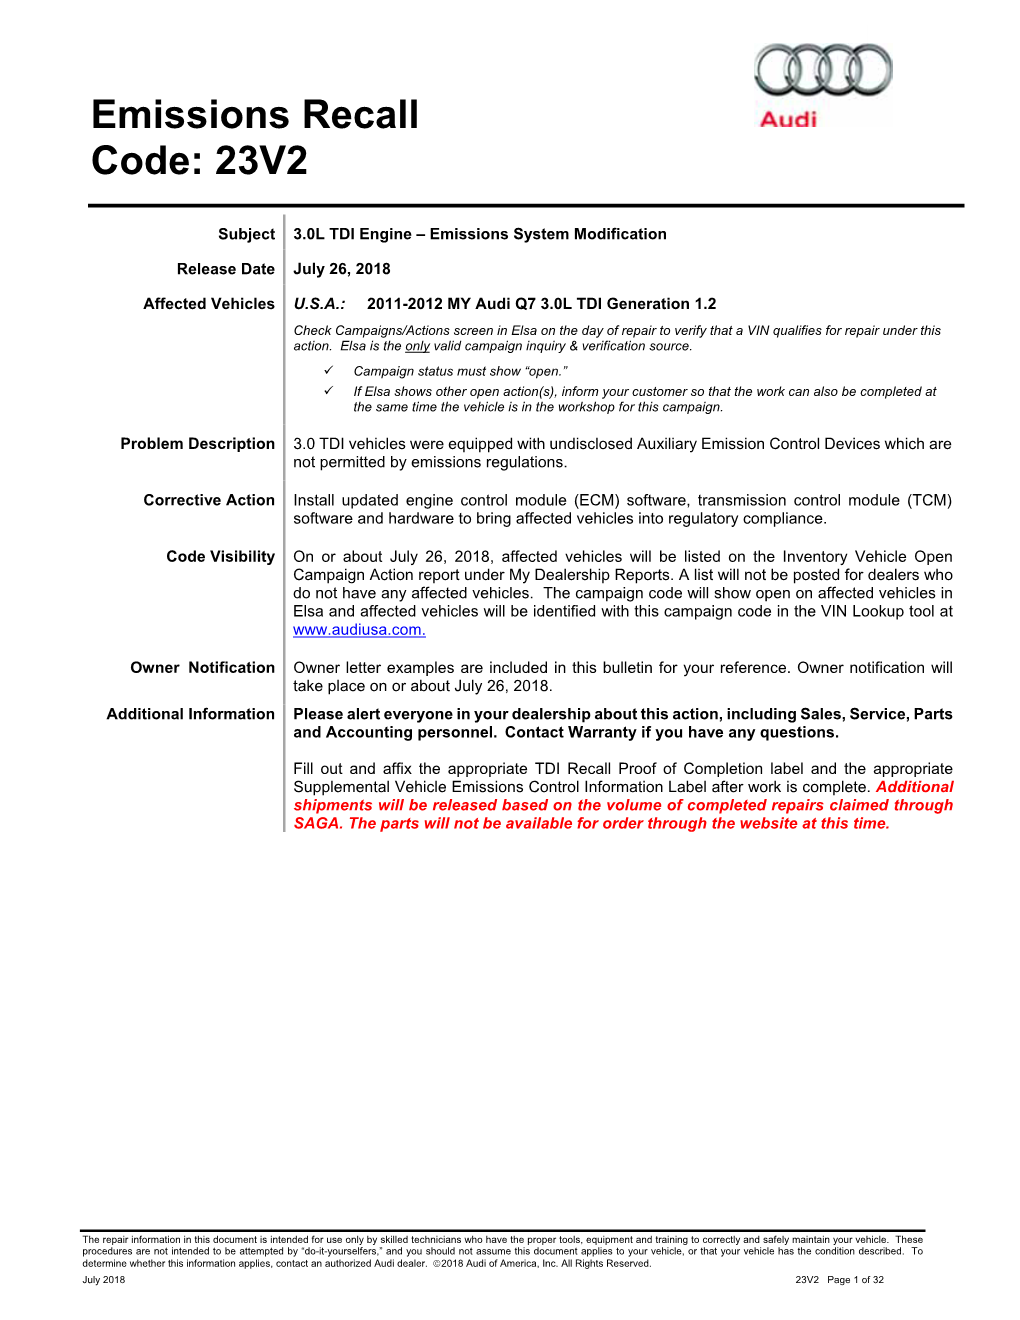 Emissions Recall Code: 23V2